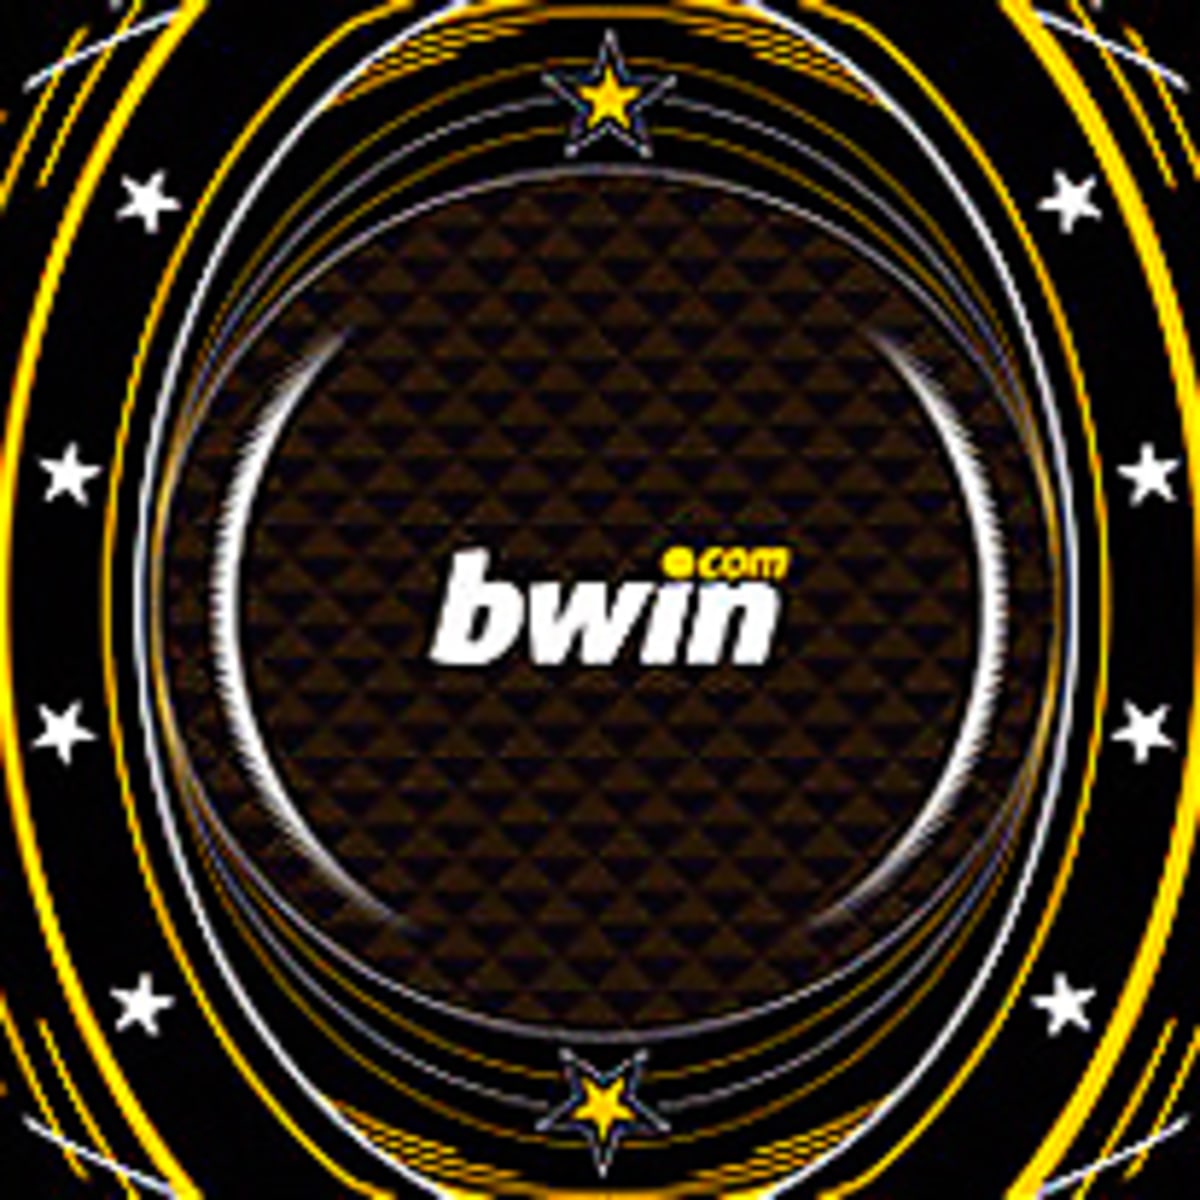 Poker Bwin